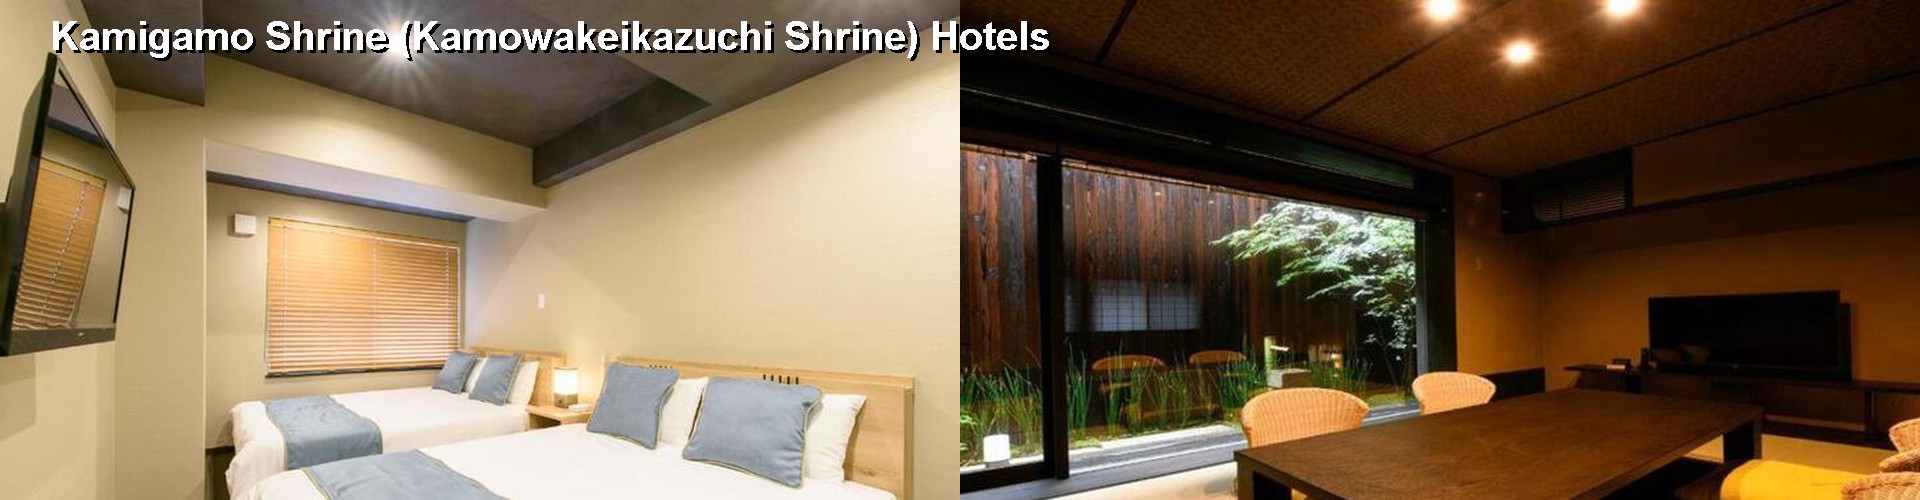 5 Best Hotels near Kamigamo Shrine (Kamowakeikazuchi Shrine)